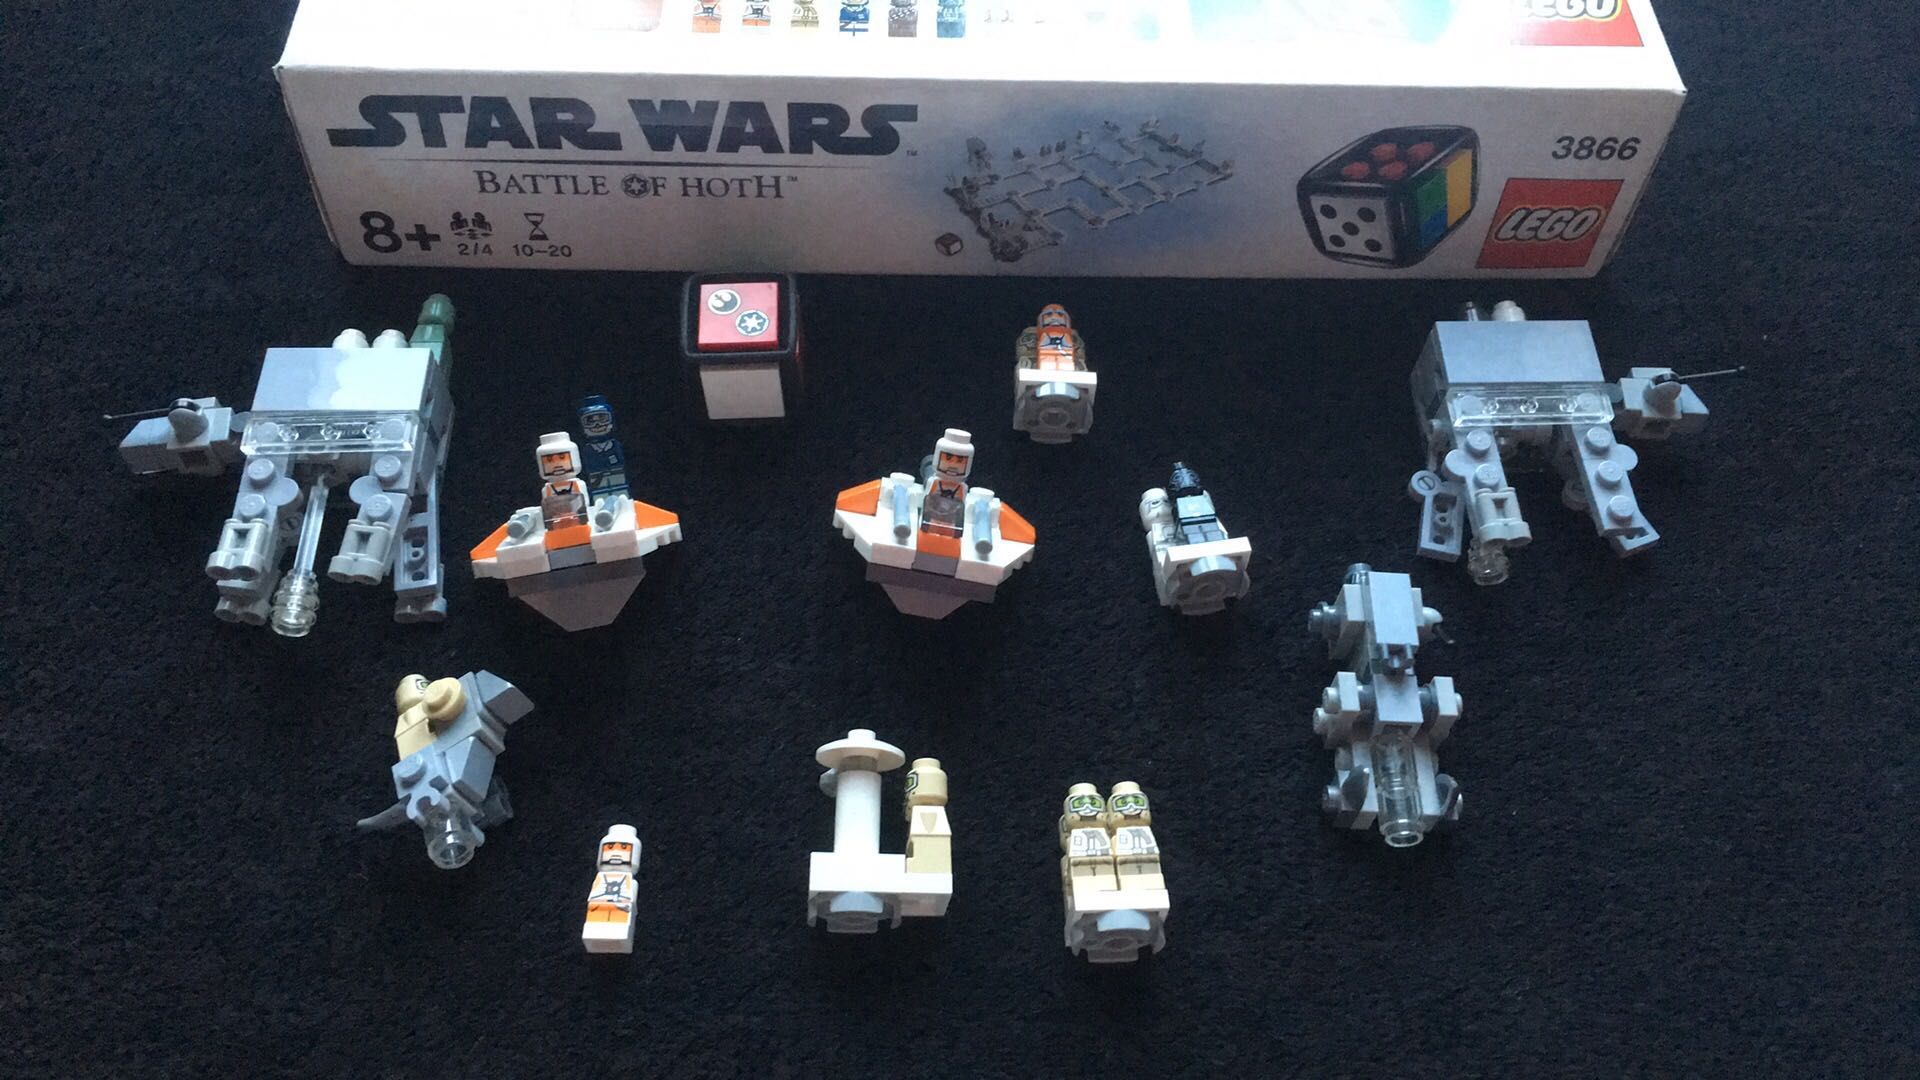 Lego gry Star Wars 3866.  Gra lego Battle of Hoth